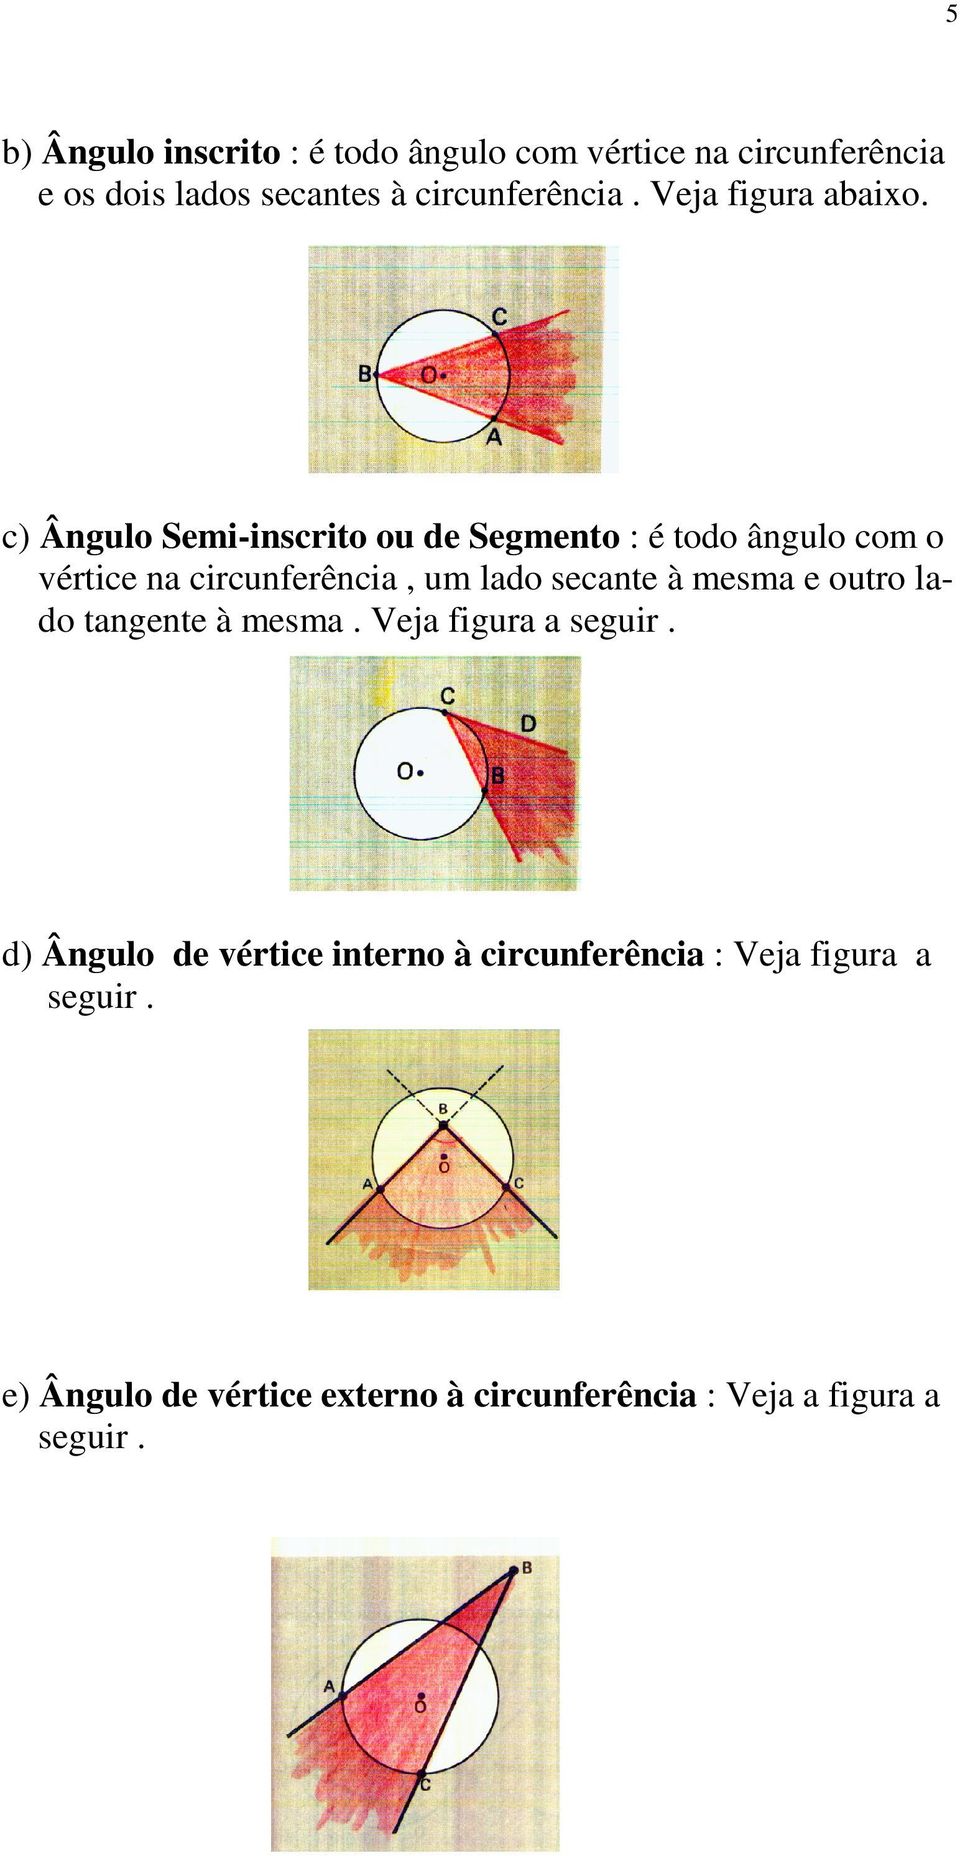 c) Ângulo Semi-inscrito ou de Segmento : é todo ângulo com o vértice na circunferência, um lado secante à